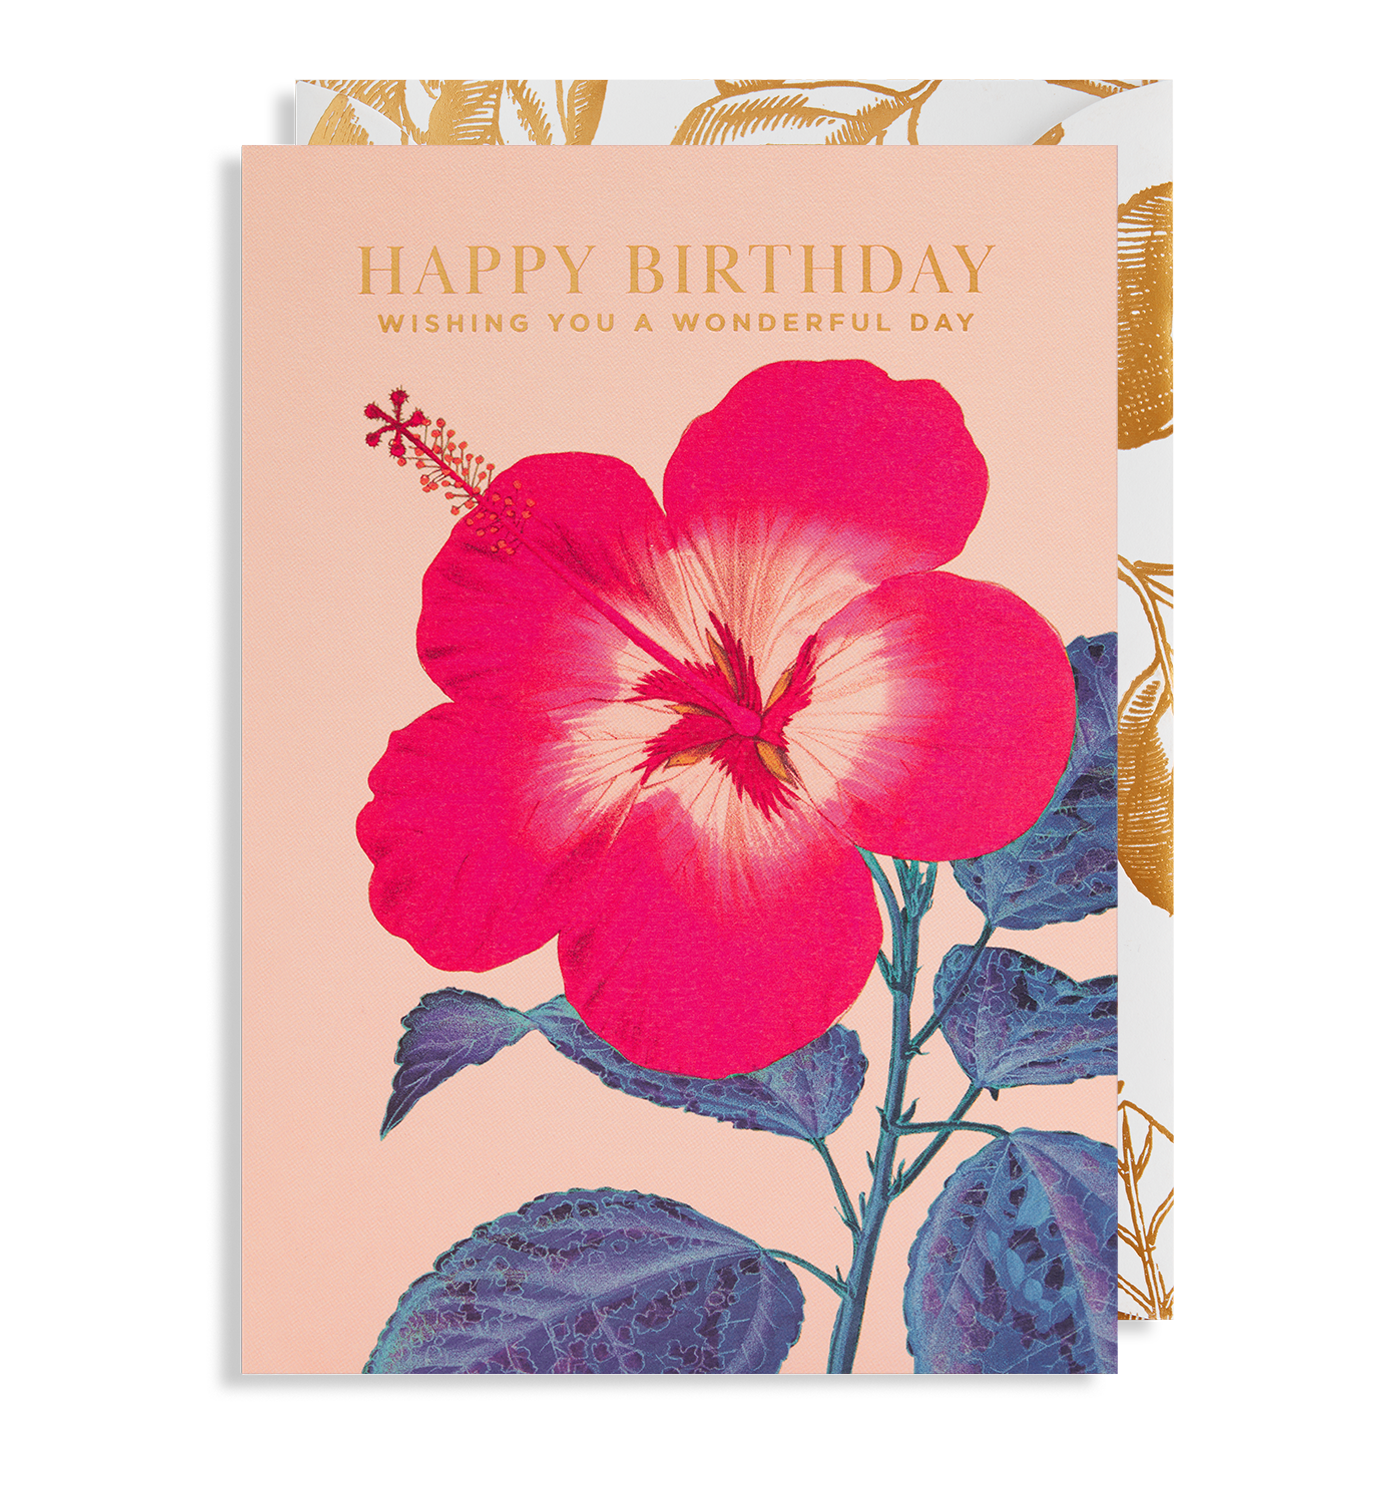 Happy Birthday. Wishing You A Wonderful Day Floral Birthday Card